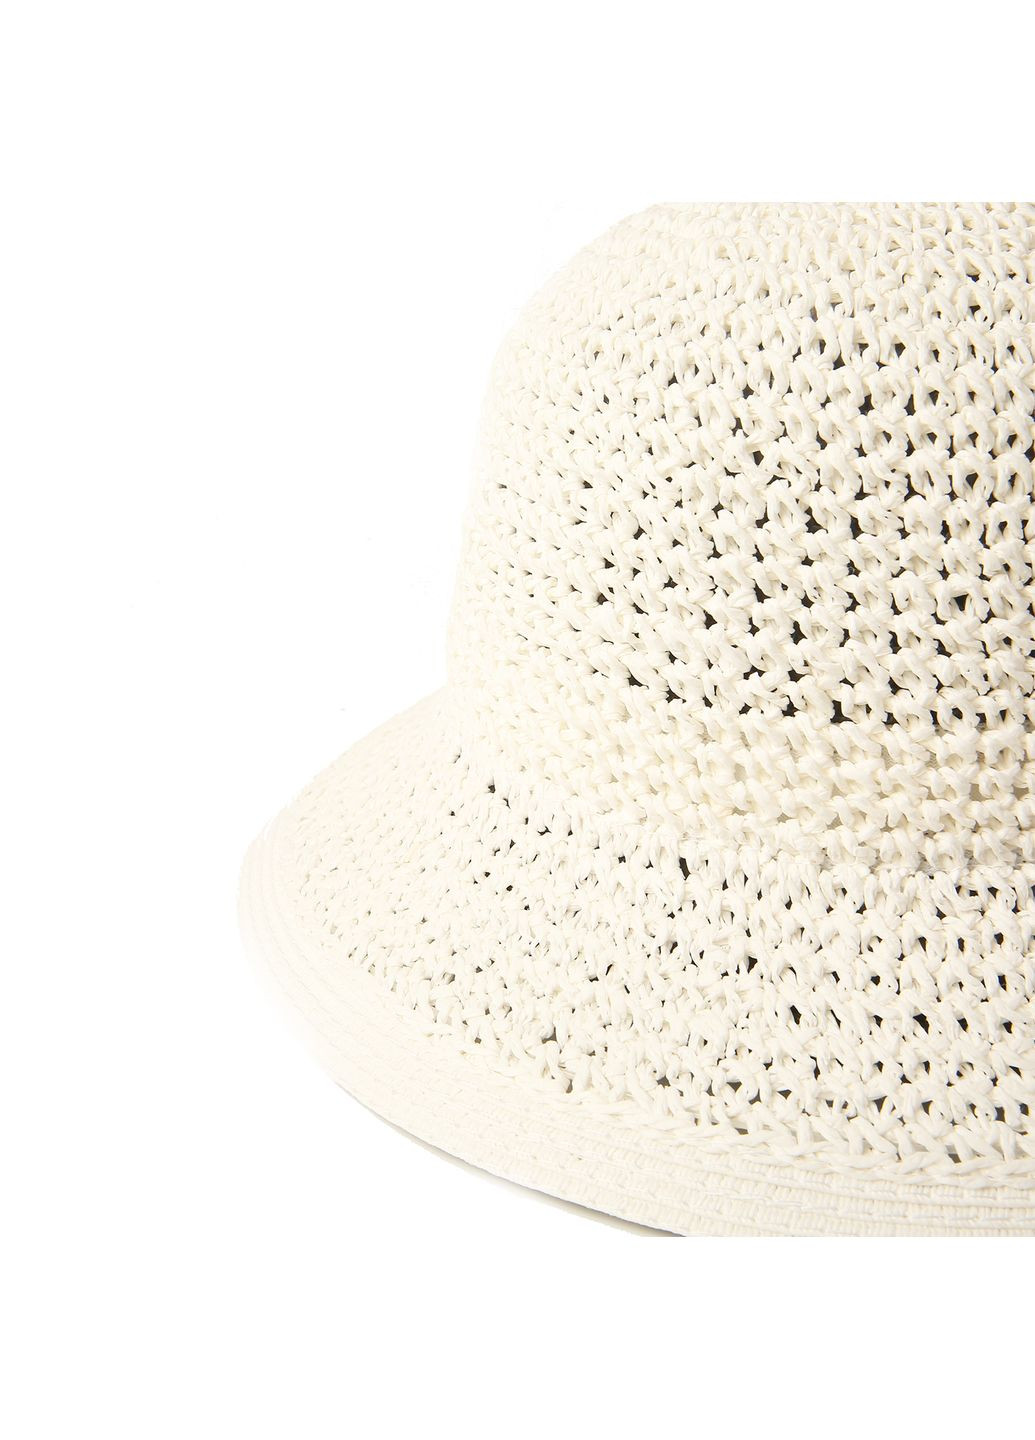 Шляпа с маленькими полями женская бумага белая CORA LuckyLOOK 376-459 (289478366)